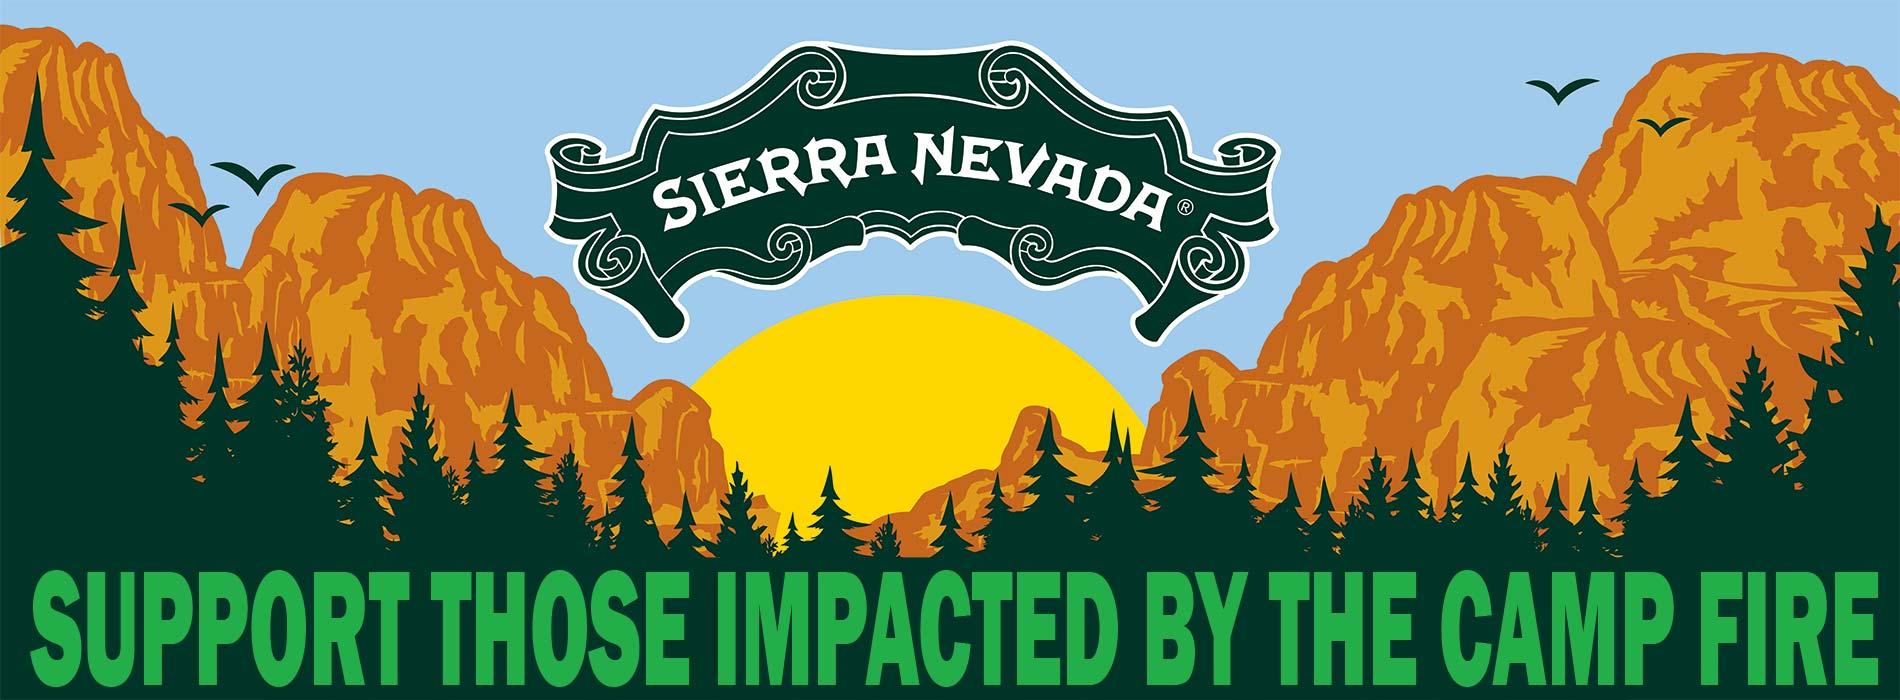 Sierra Nevada Beer Logo - Sierra Nevada Brewing Co.